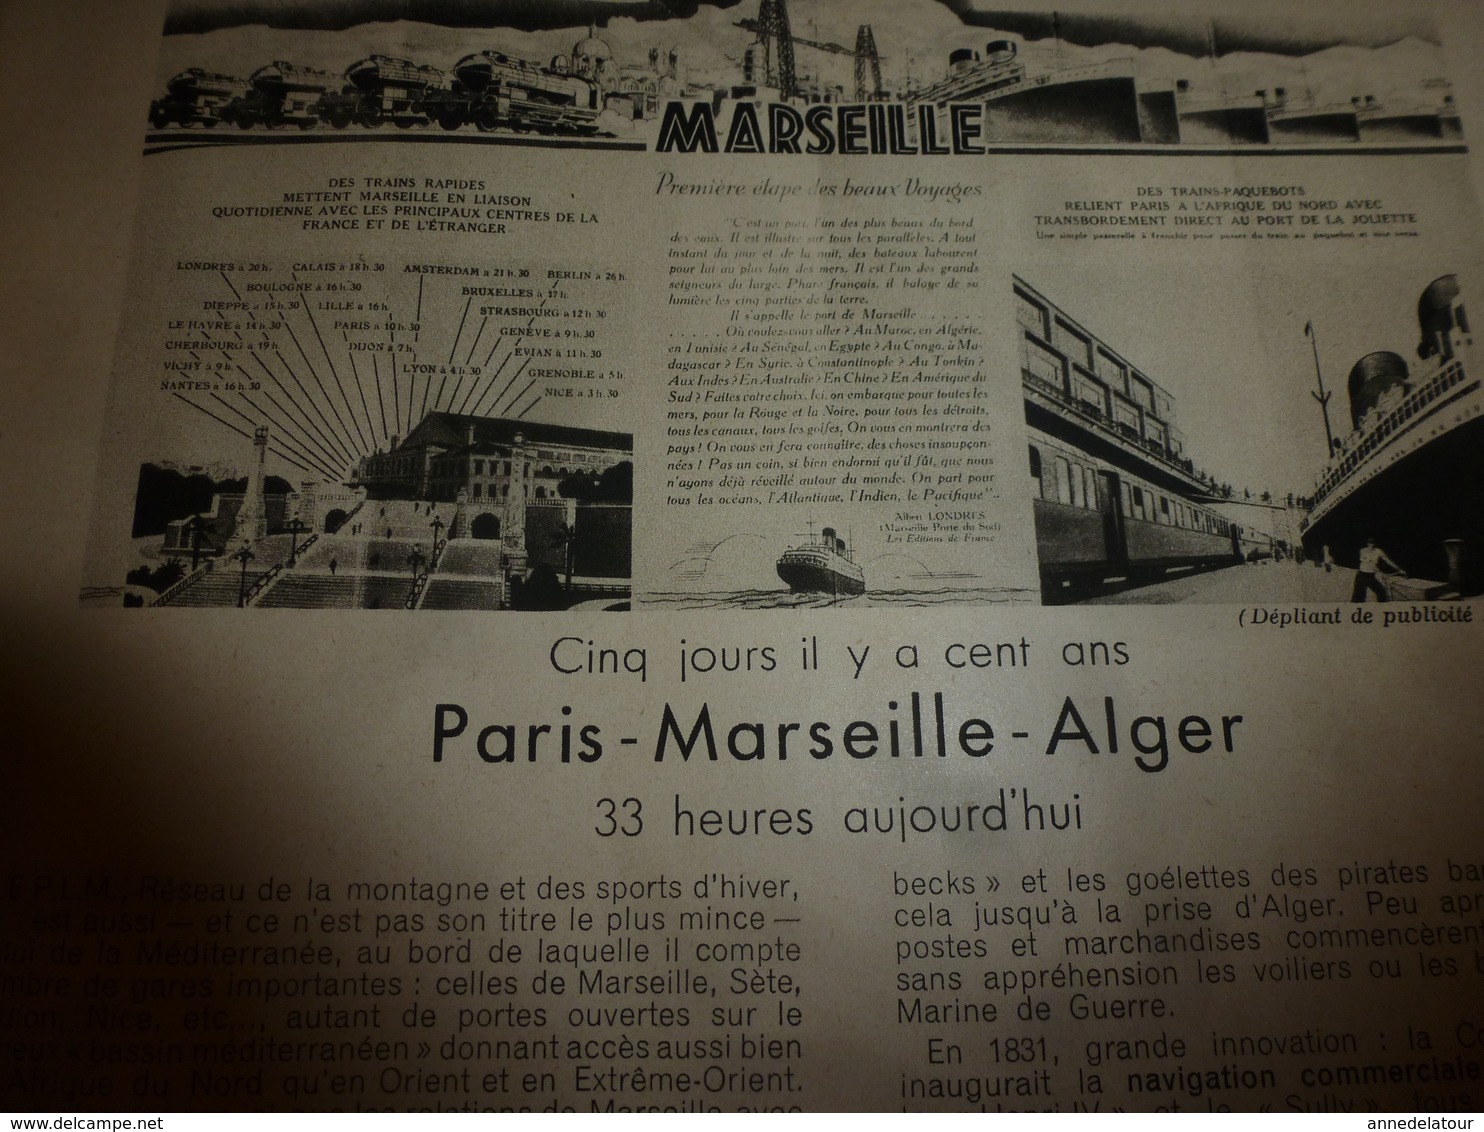 1945 Bulletin PLM : Monaco et son armée; Sur la route ferrée des Alpes; Arles; Toulon; etc